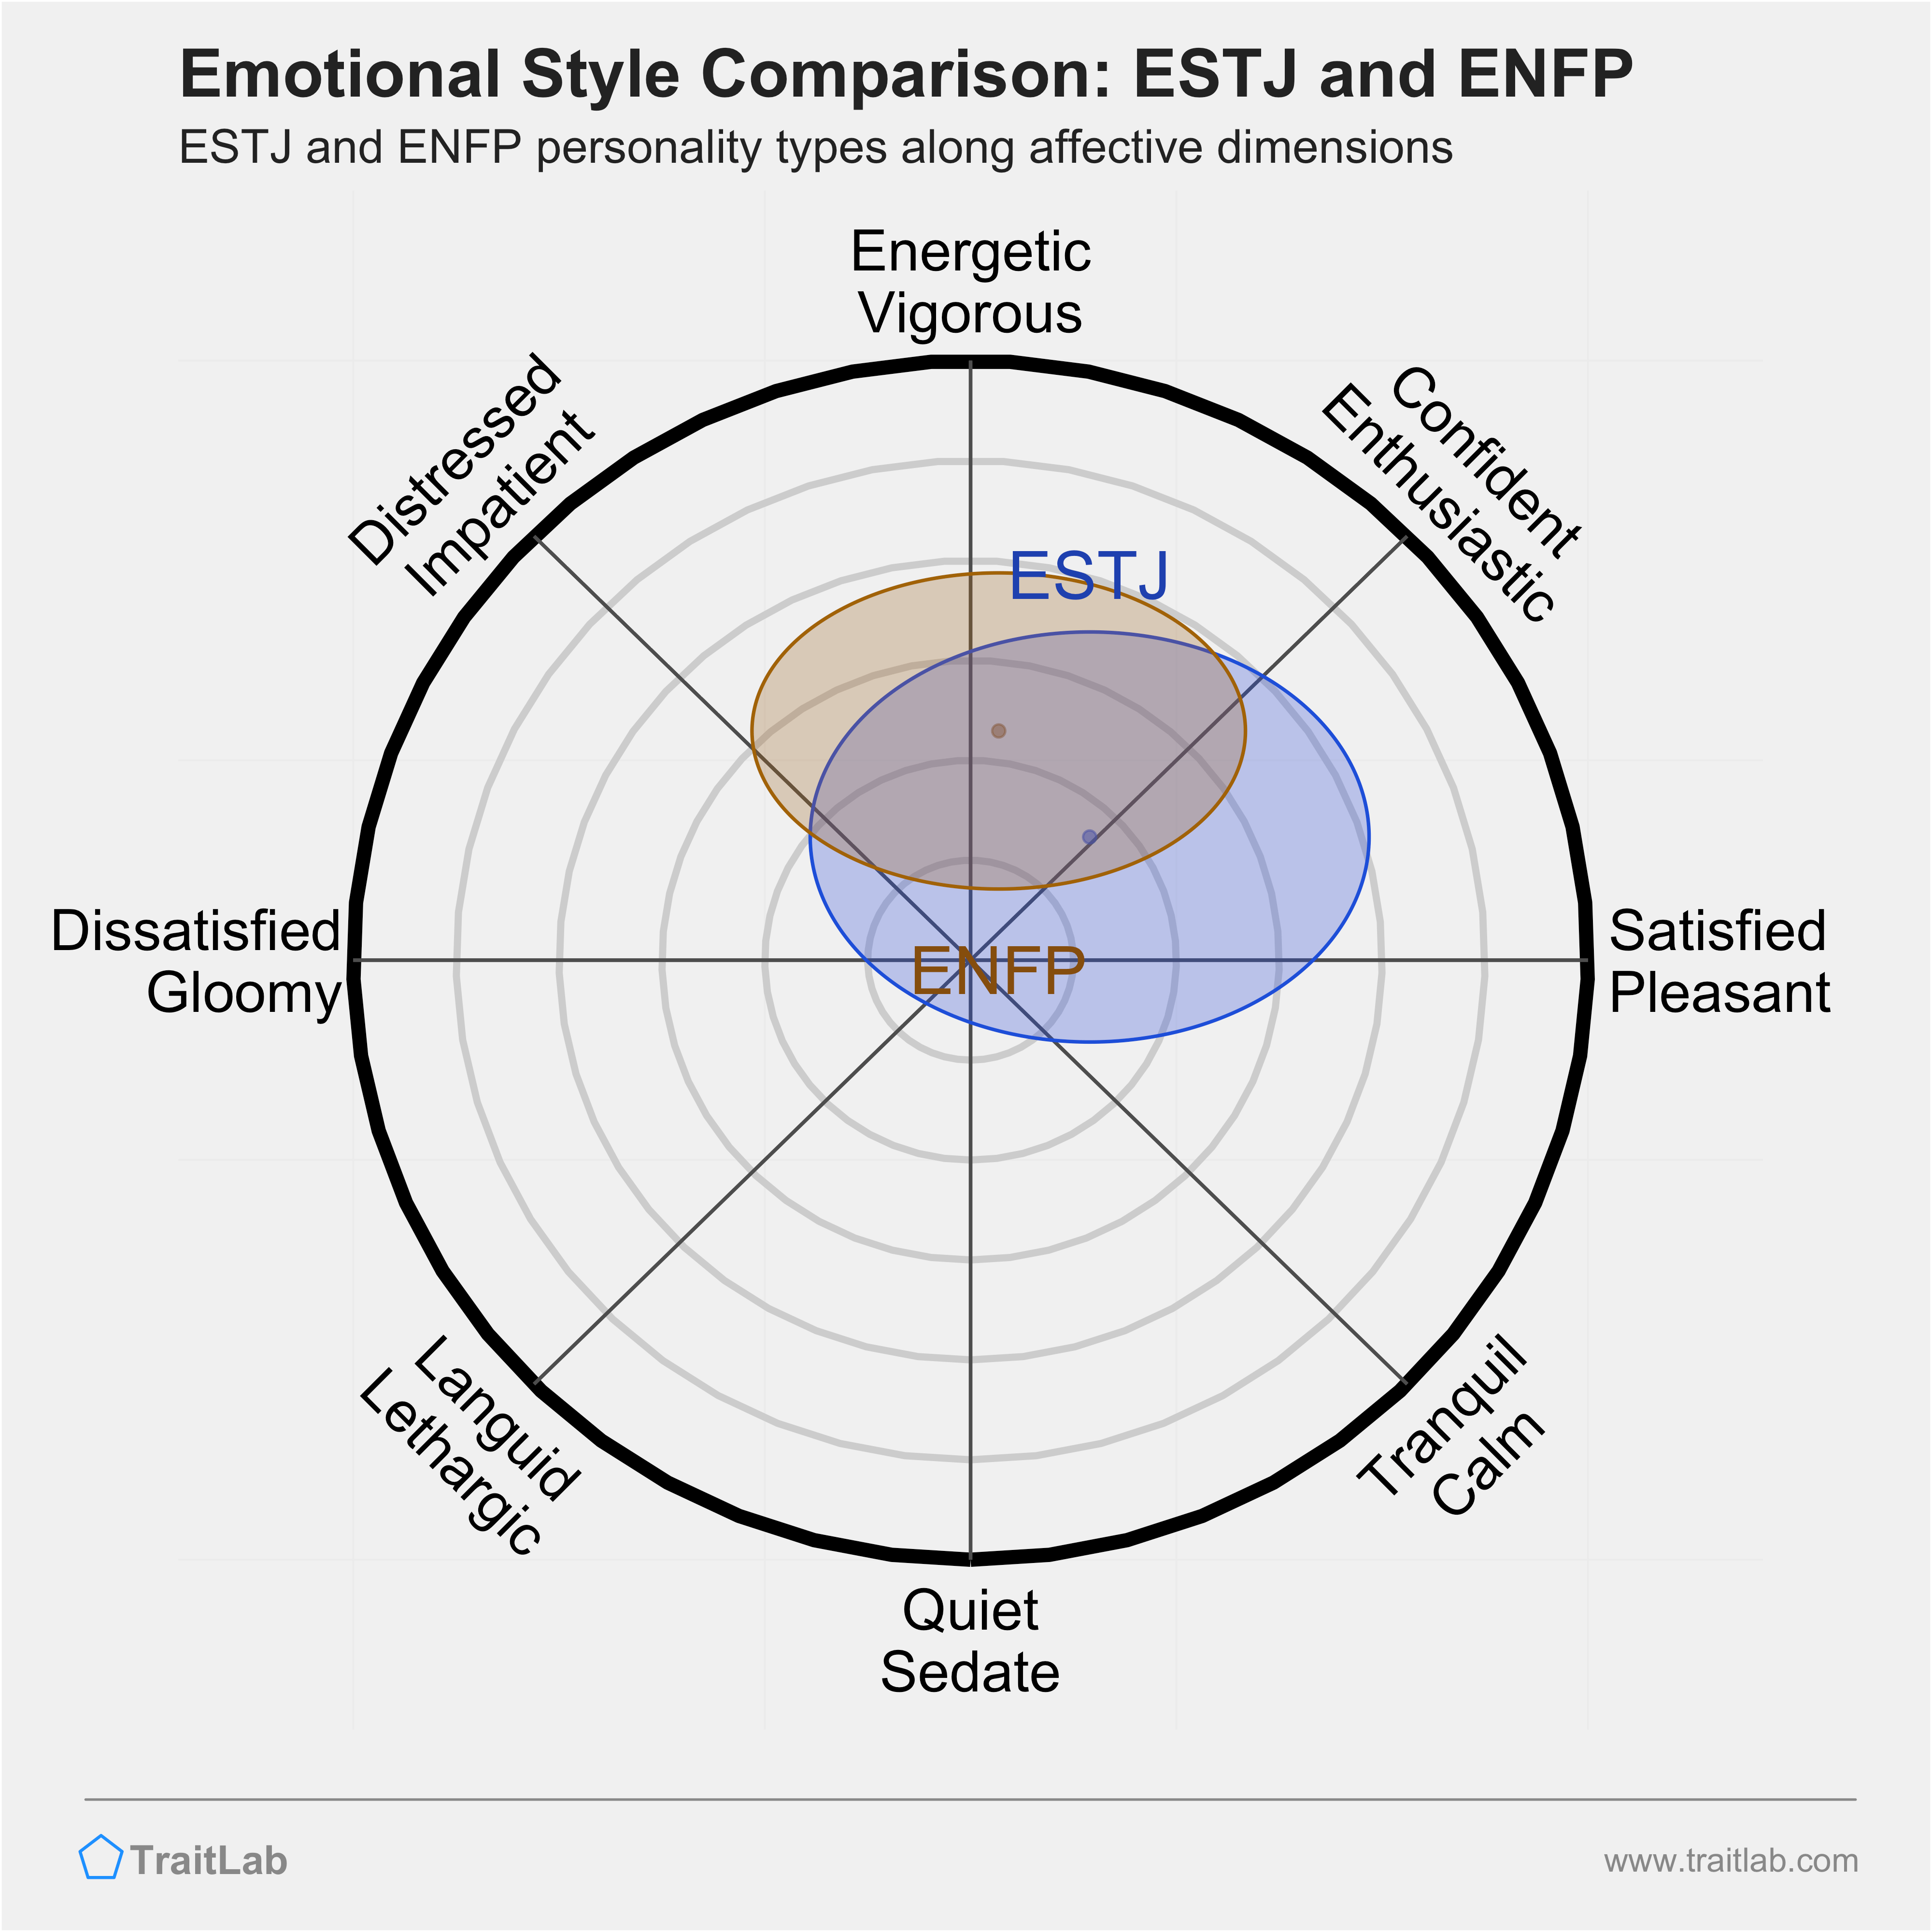 ESTJ and ENFP comparison across emotional (affective) dimensions